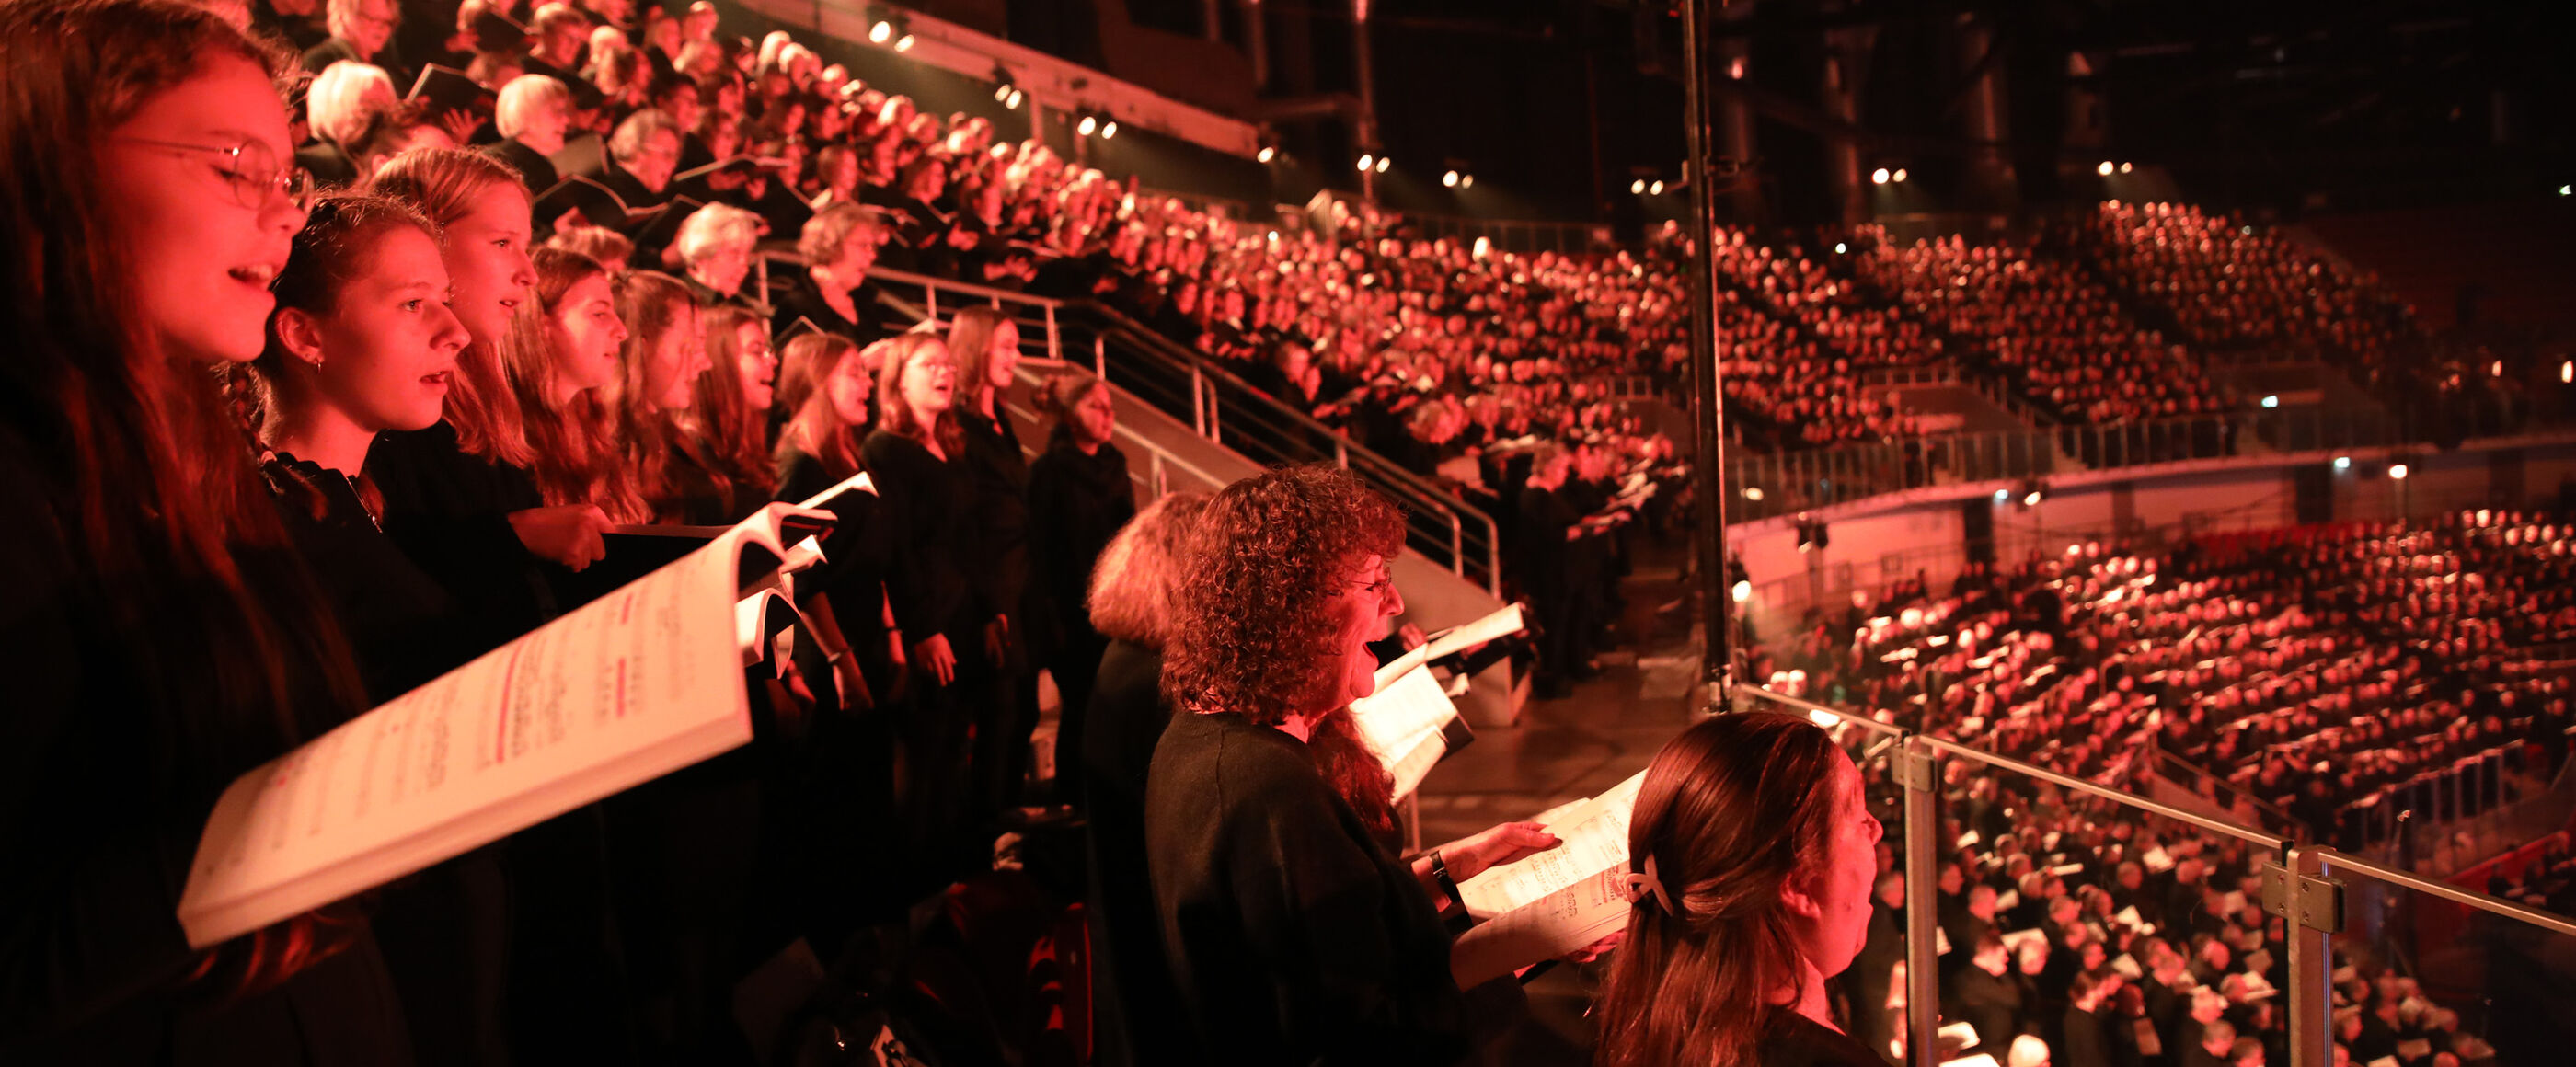 Viele junge Chorsängerinnen und -sänger singen in einem Stadion.